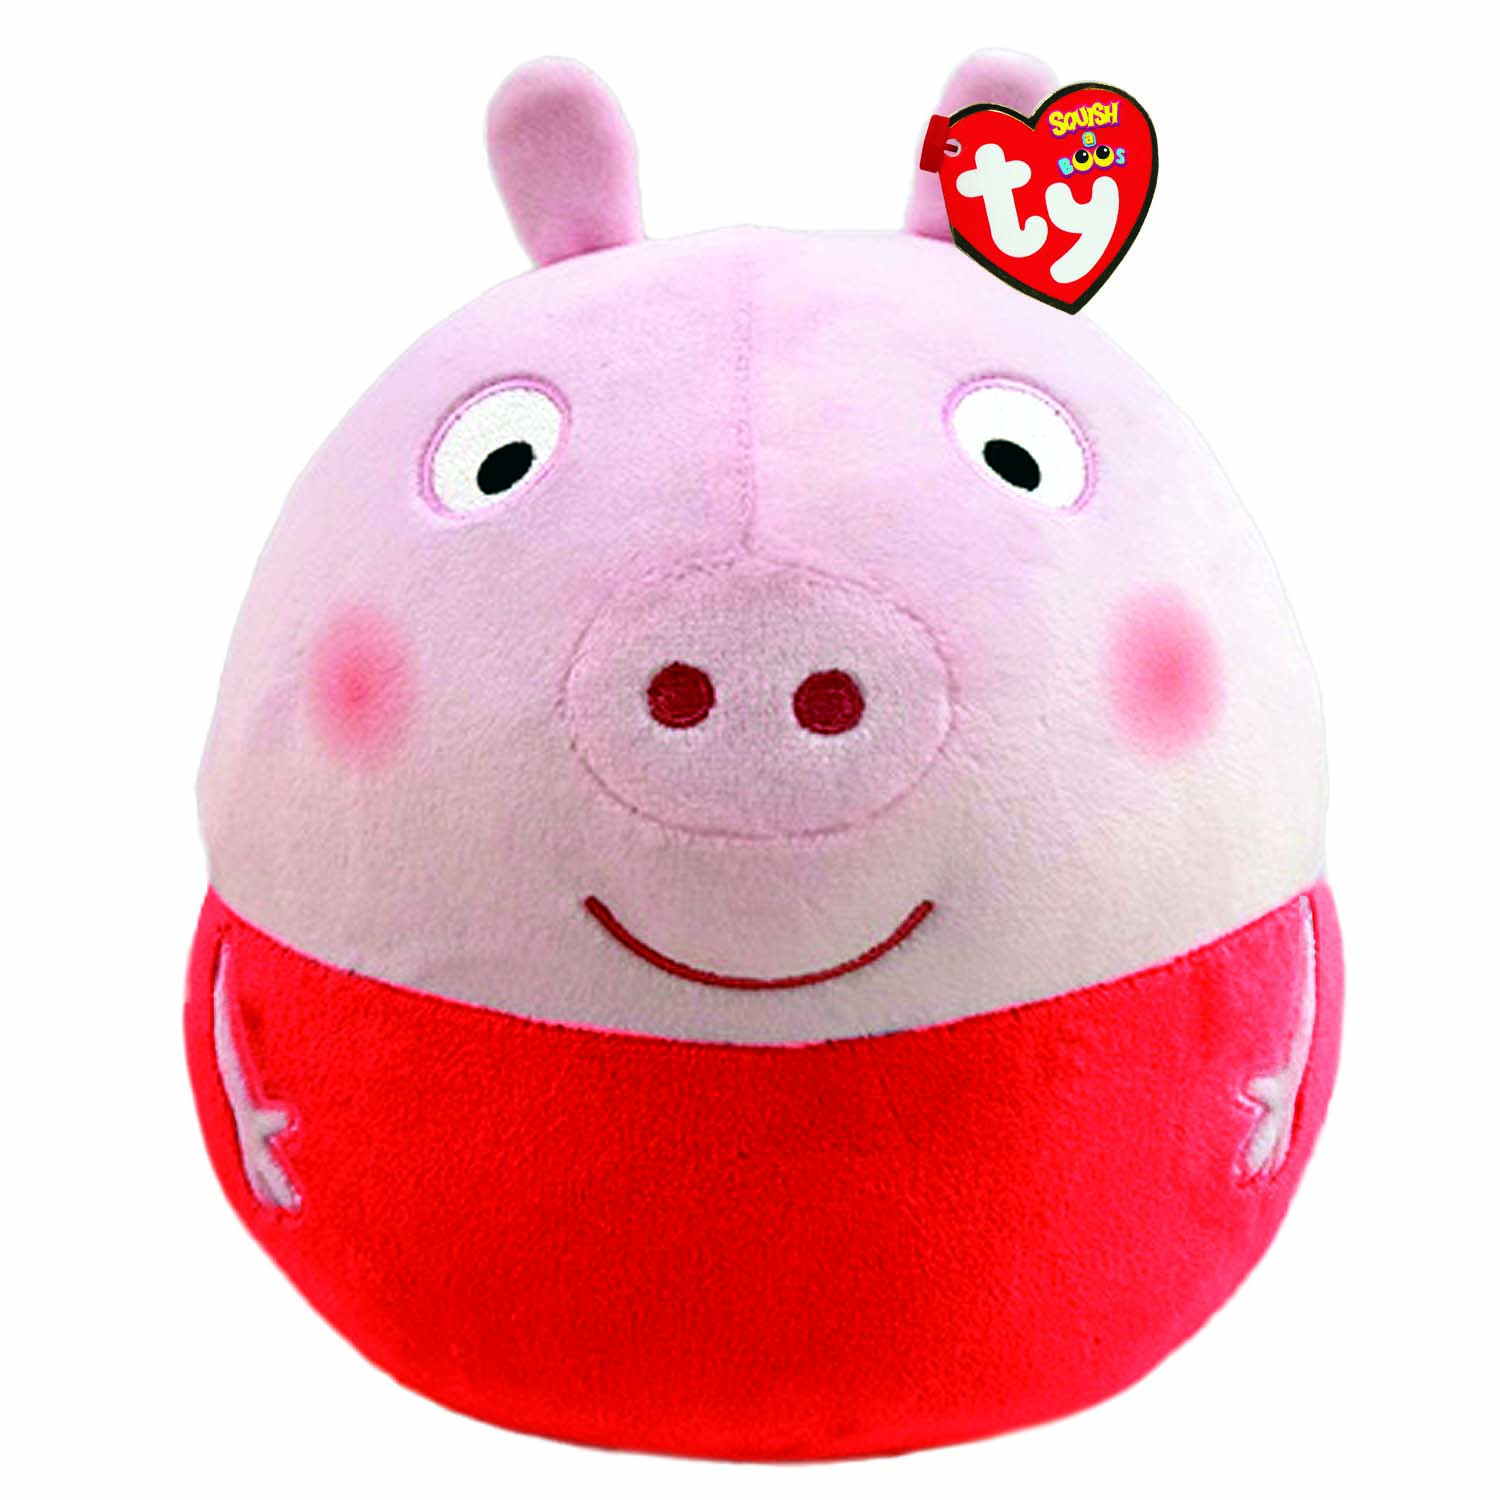 PEPPA PIG Peppa Pig Peppa, Kissen cm 20 Plüschtier Squish